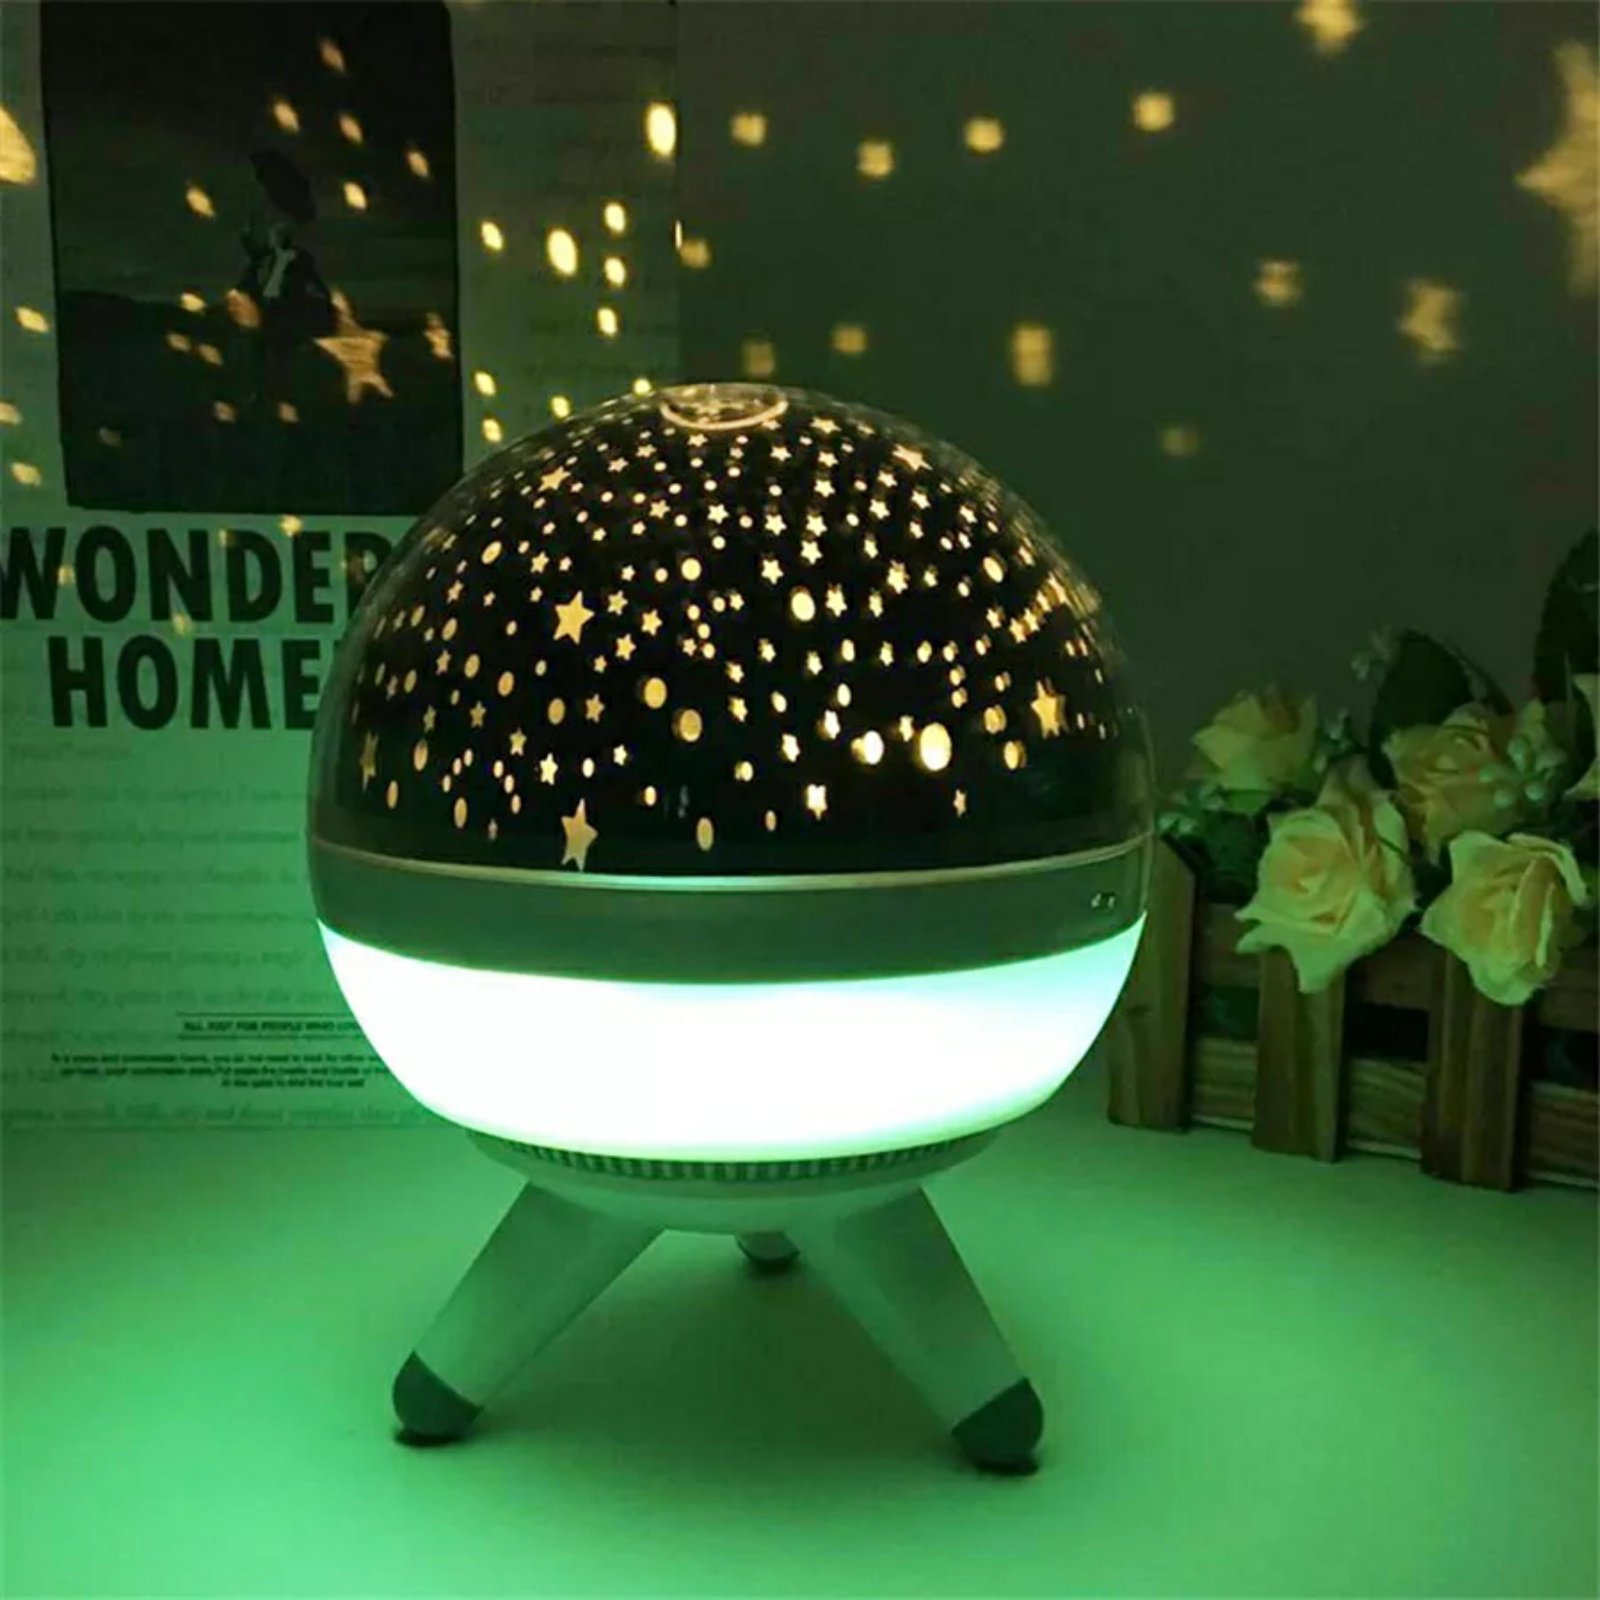 Projecteur LED rotatif produisant l'image d'un ciel étoilé, idéal pour la  chambre d'un enfant - Letshop.dz